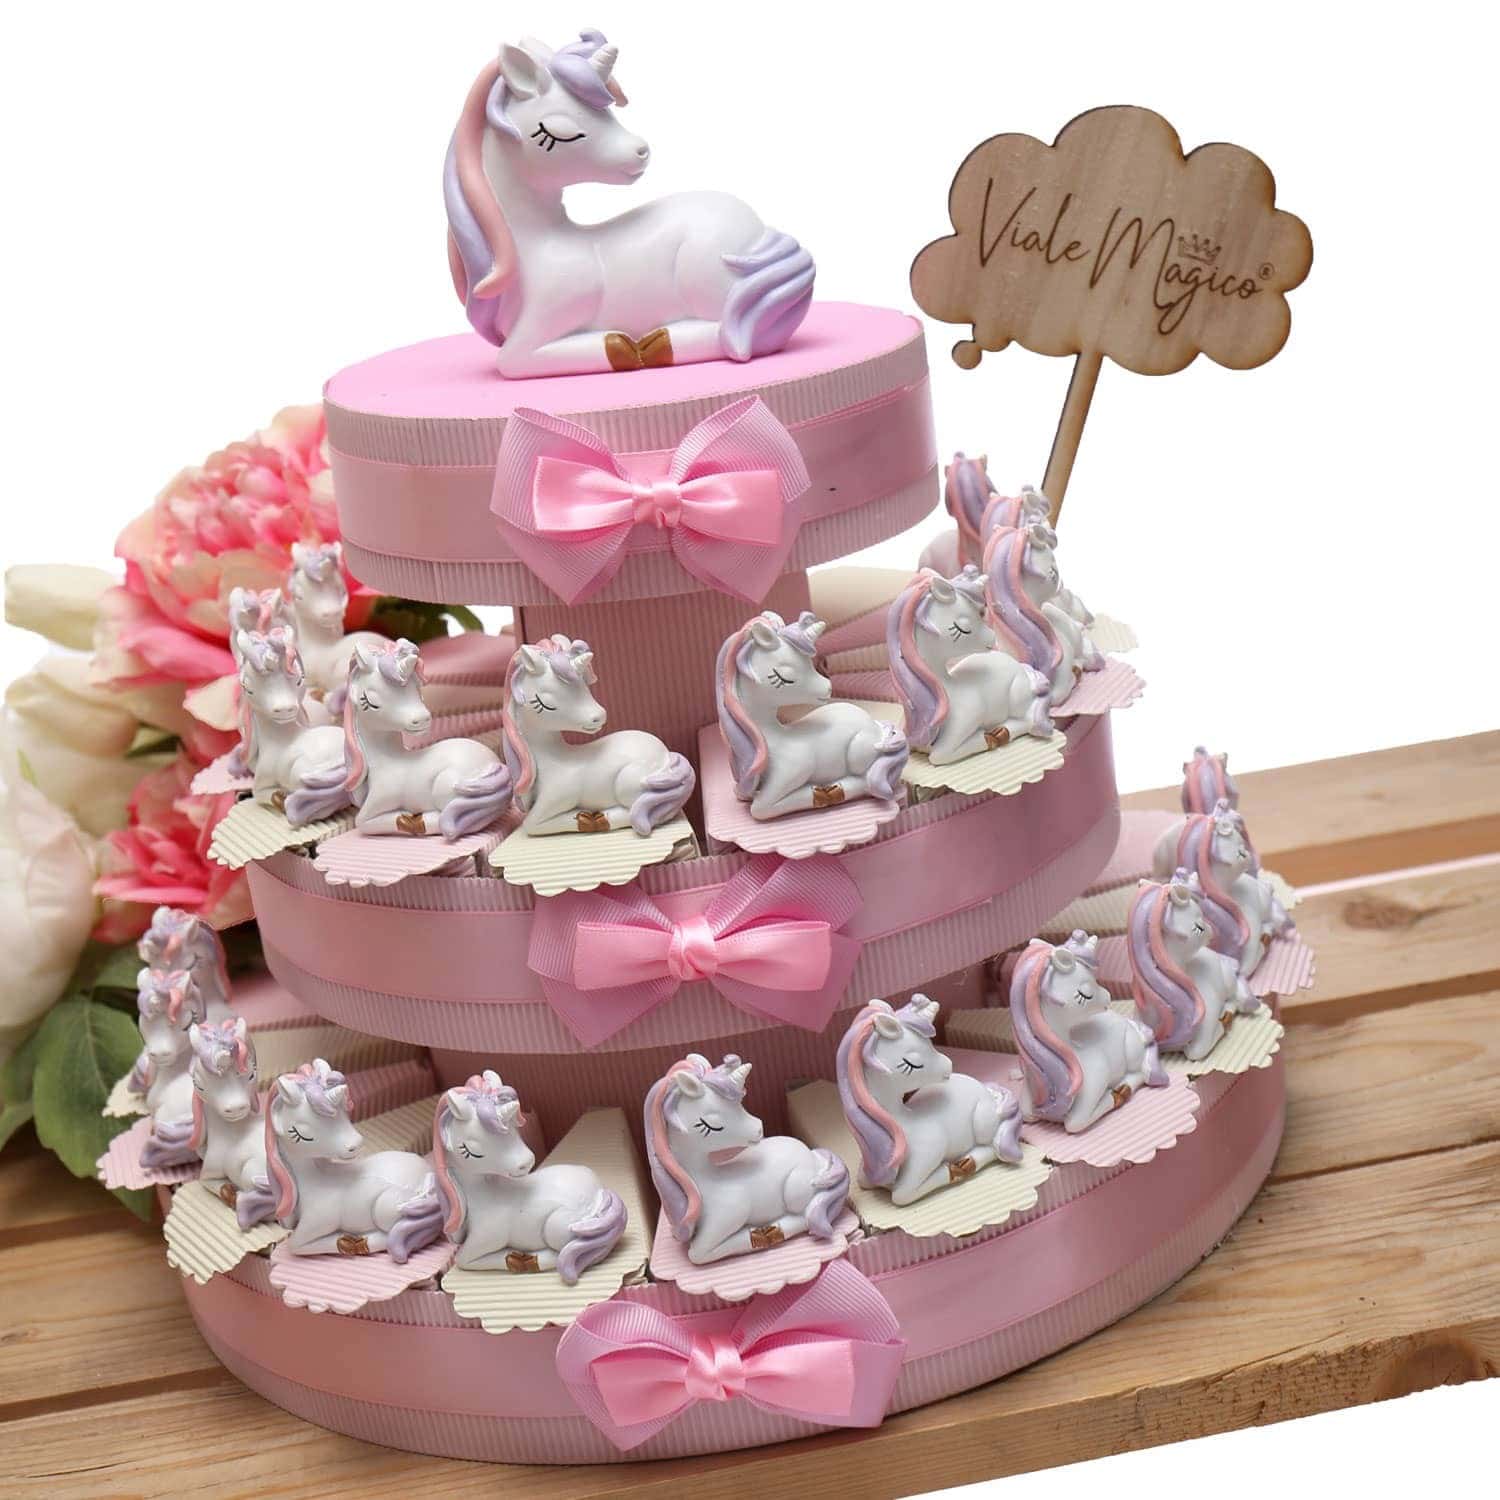 Torta bomboniere unicorno rosa, 21 fette con confetti, per battesimo